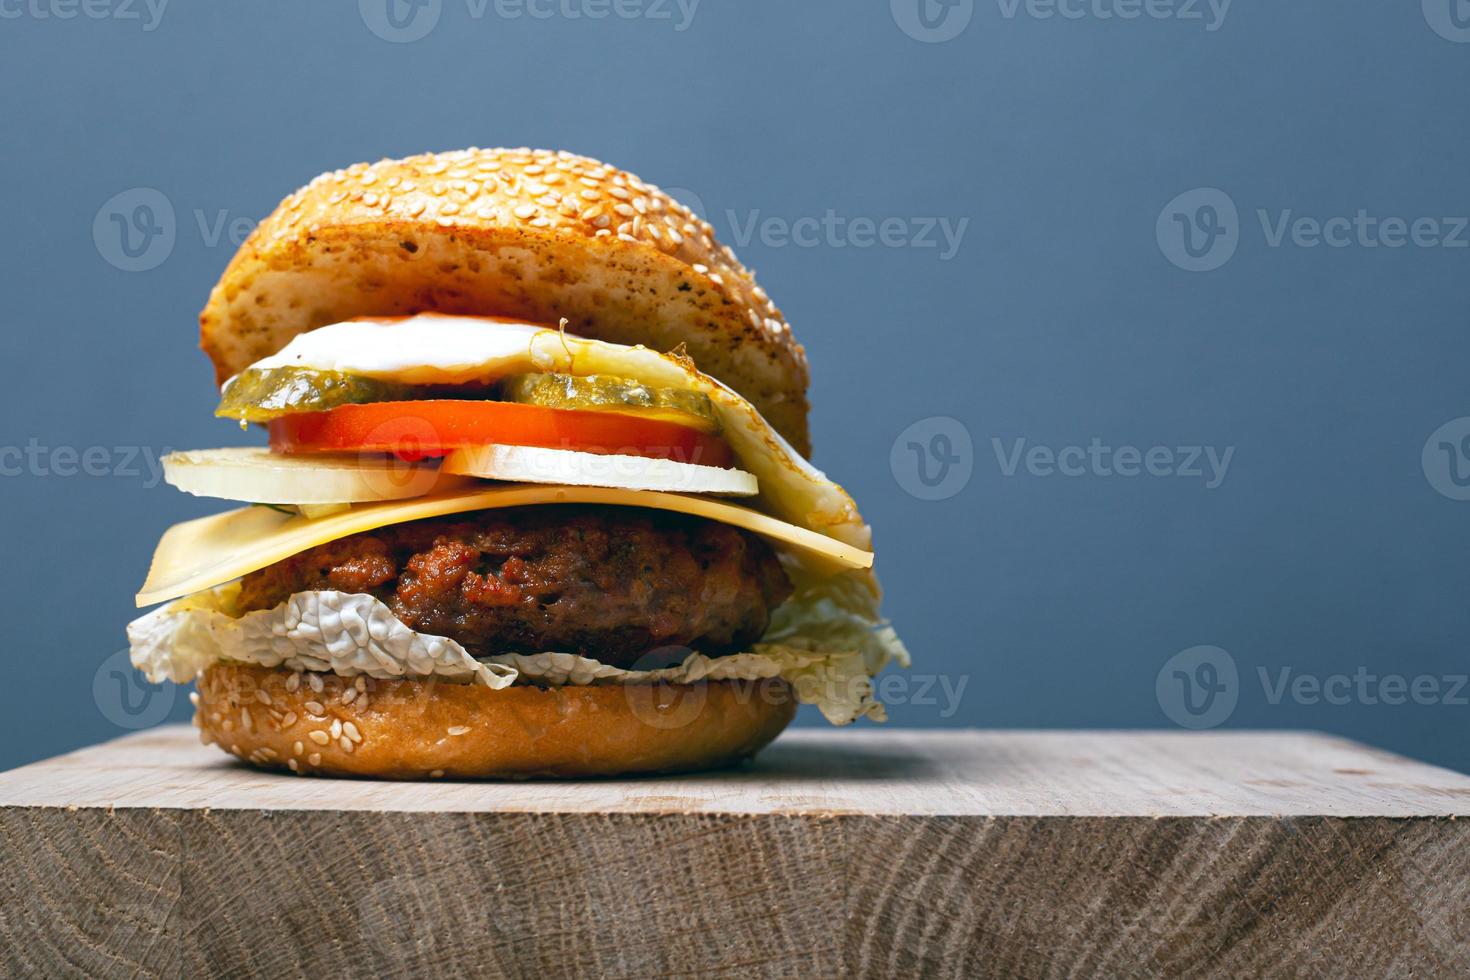 hambúrguer suculento com costeleta, queijo e vegetais em um fundo cinza com espaço de cópia foto